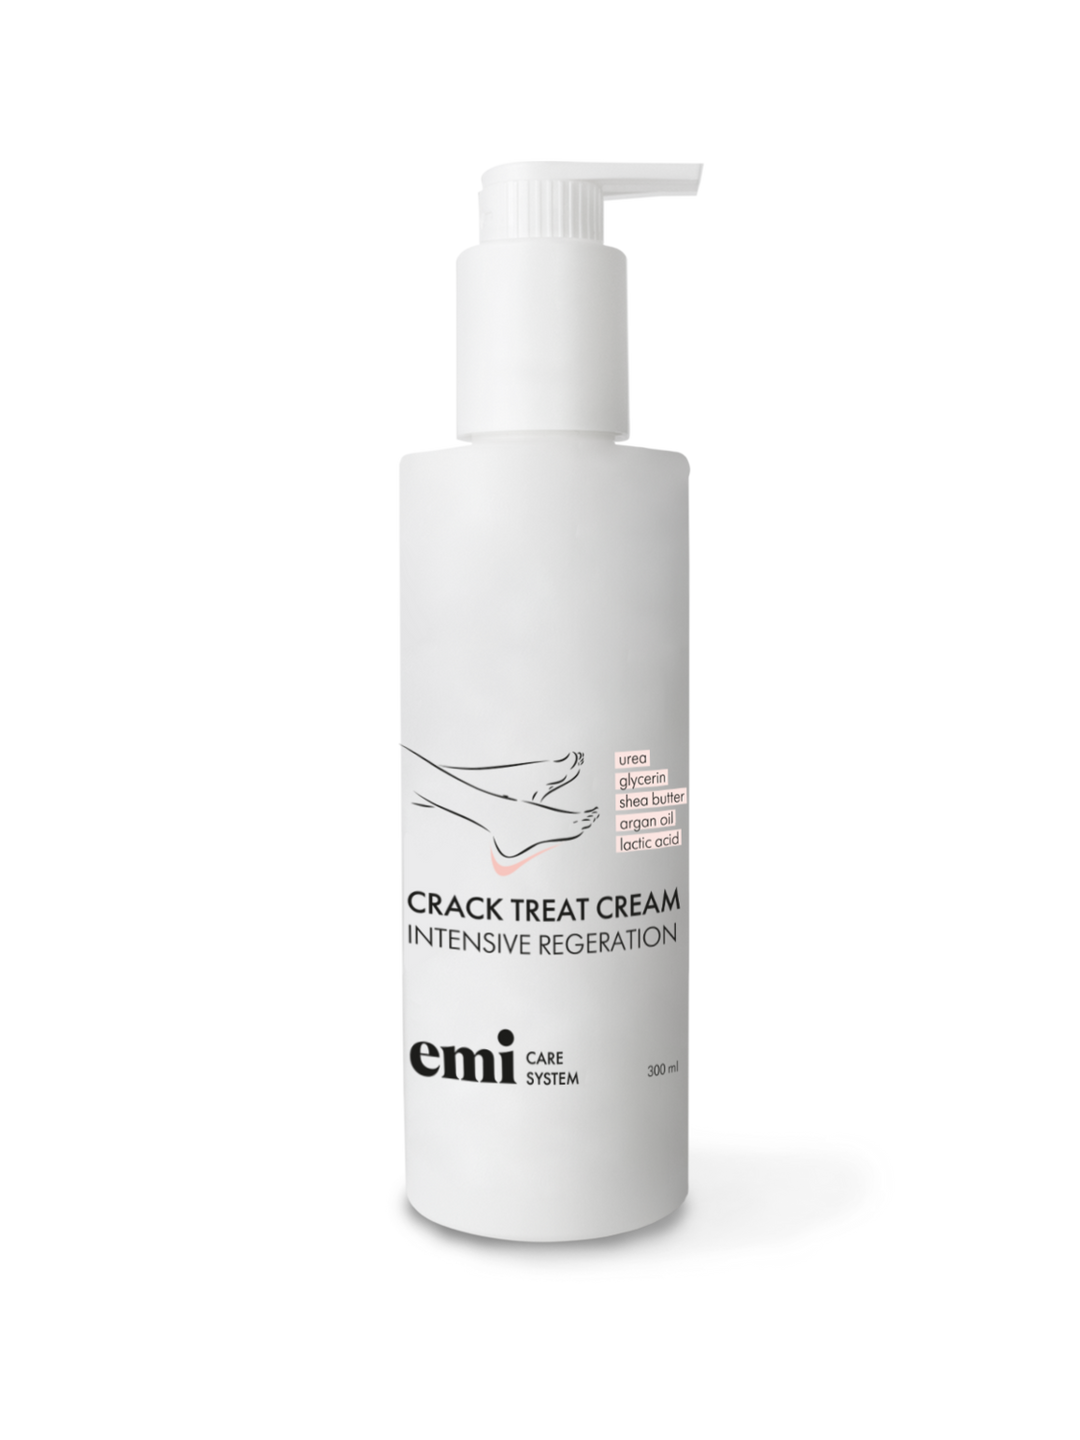 EMI Crack Treat Cream, 300 ml.